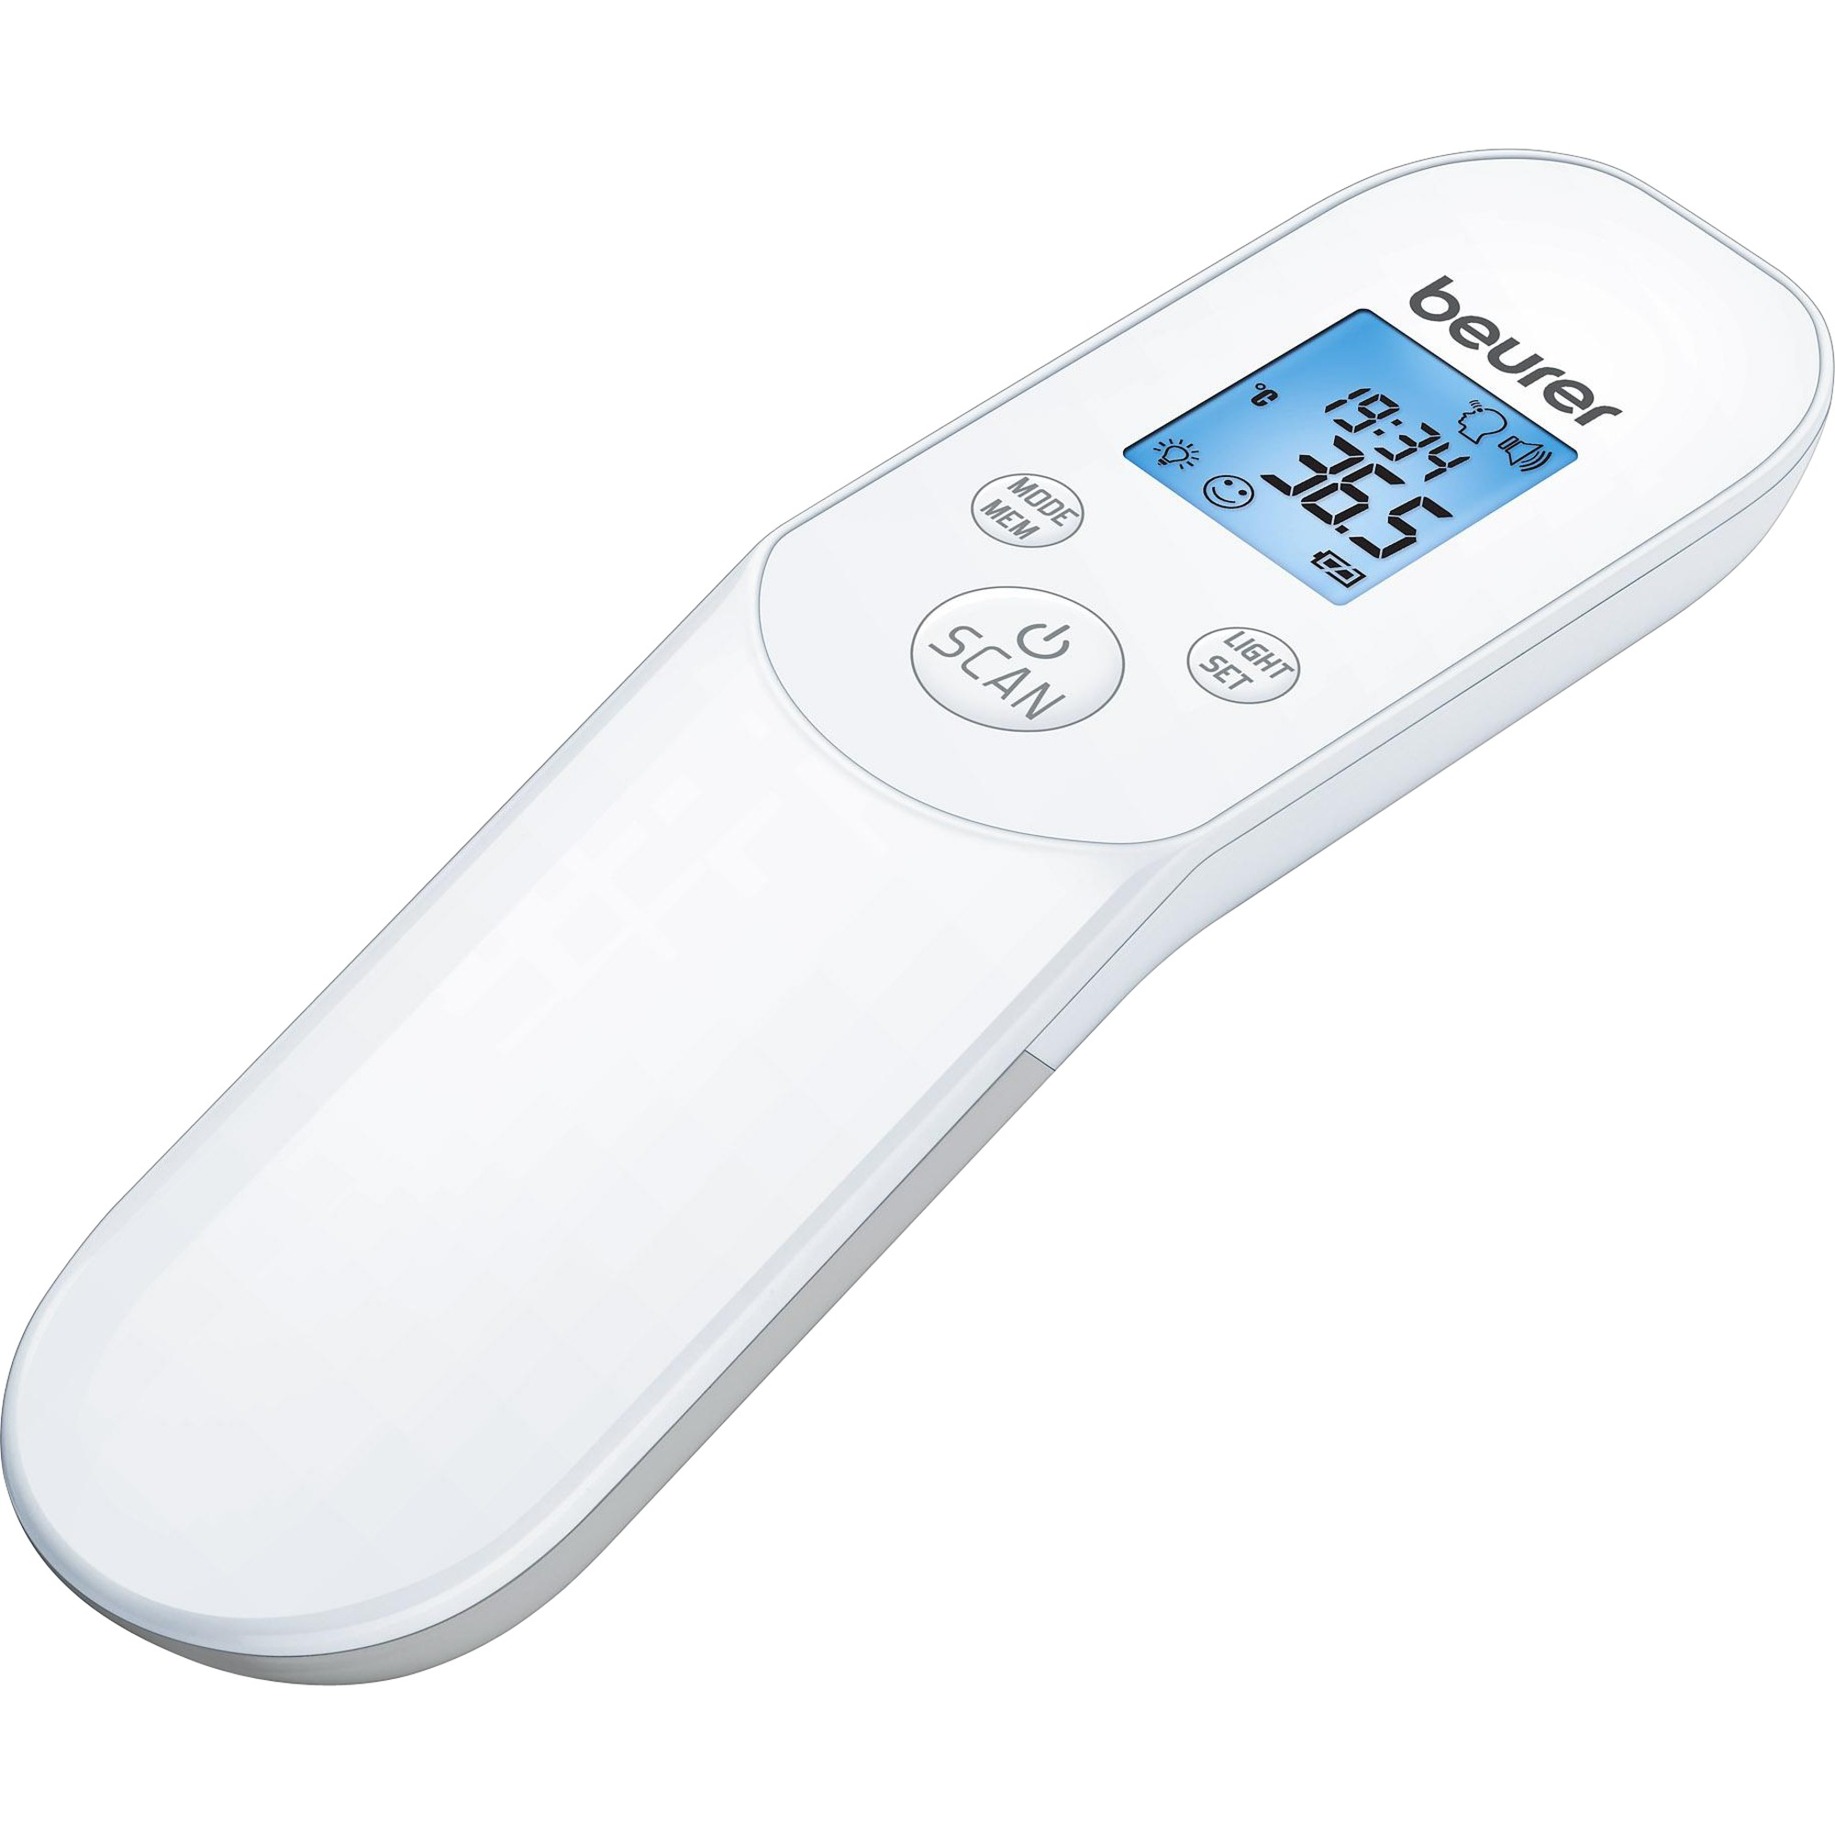 Image of Alternate - Fieberthermometer FT 85 online einkaufen bei Alternate